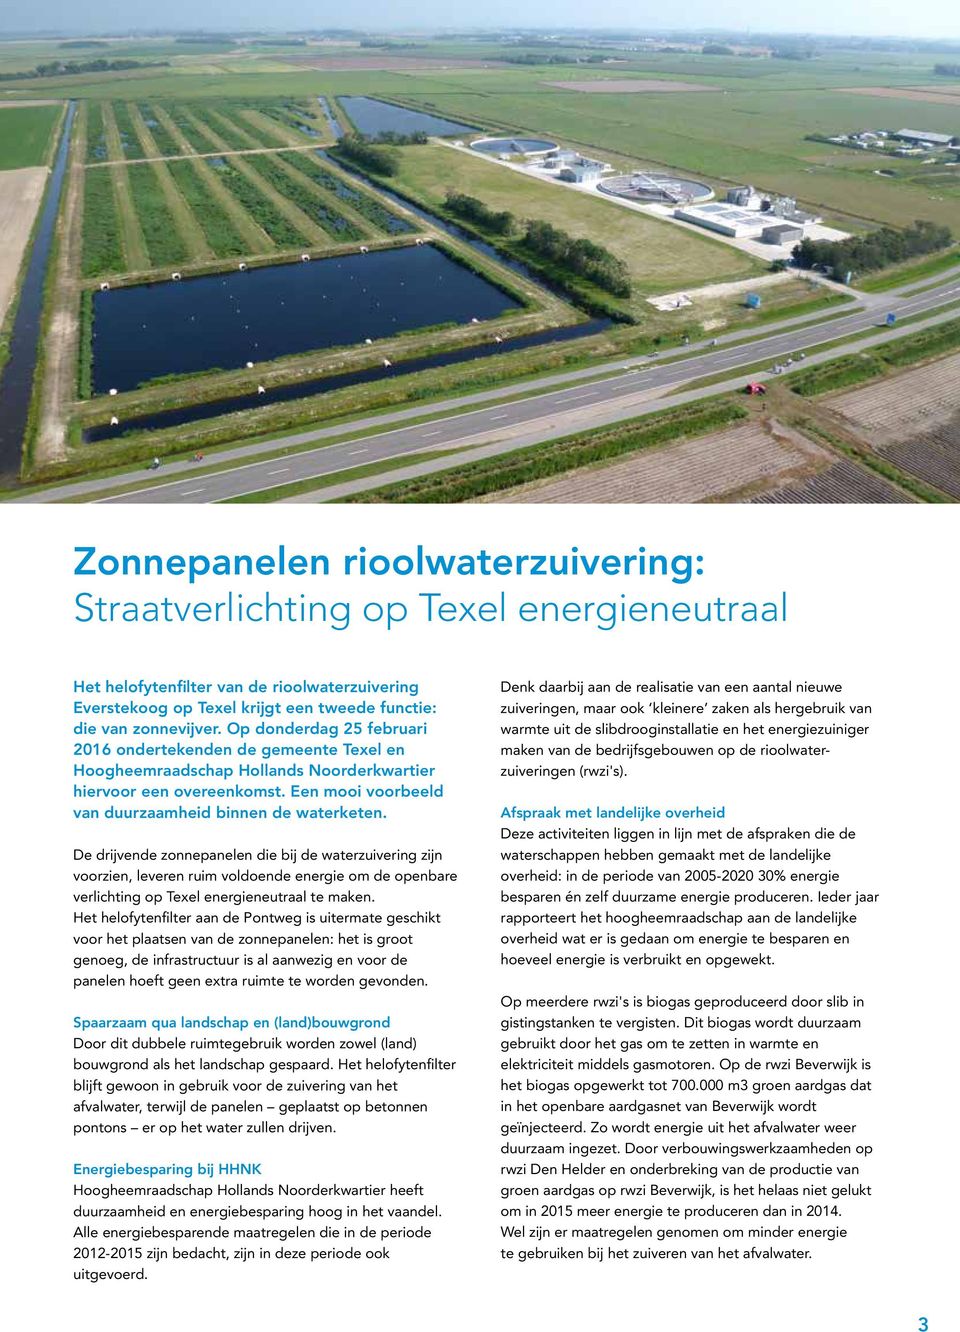 De drijvende zonnepanelen die bij de waterzuivering zijn voorzien, leveren ruim voldoende energie om de openbare verlichting op Texel energieneutraal te maken.